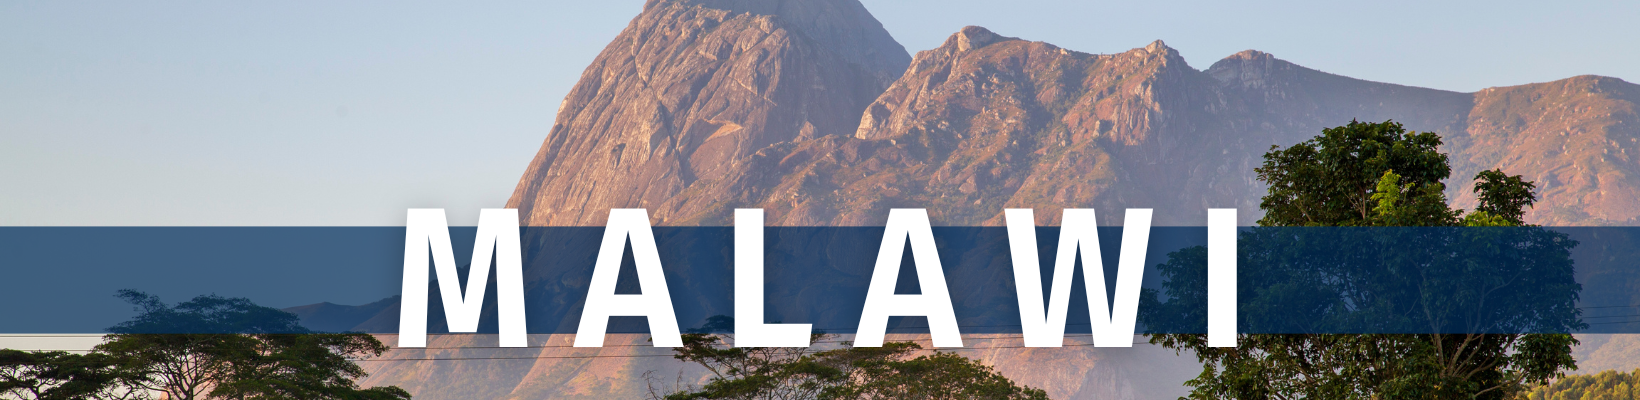 Malawi Travelogue - Header